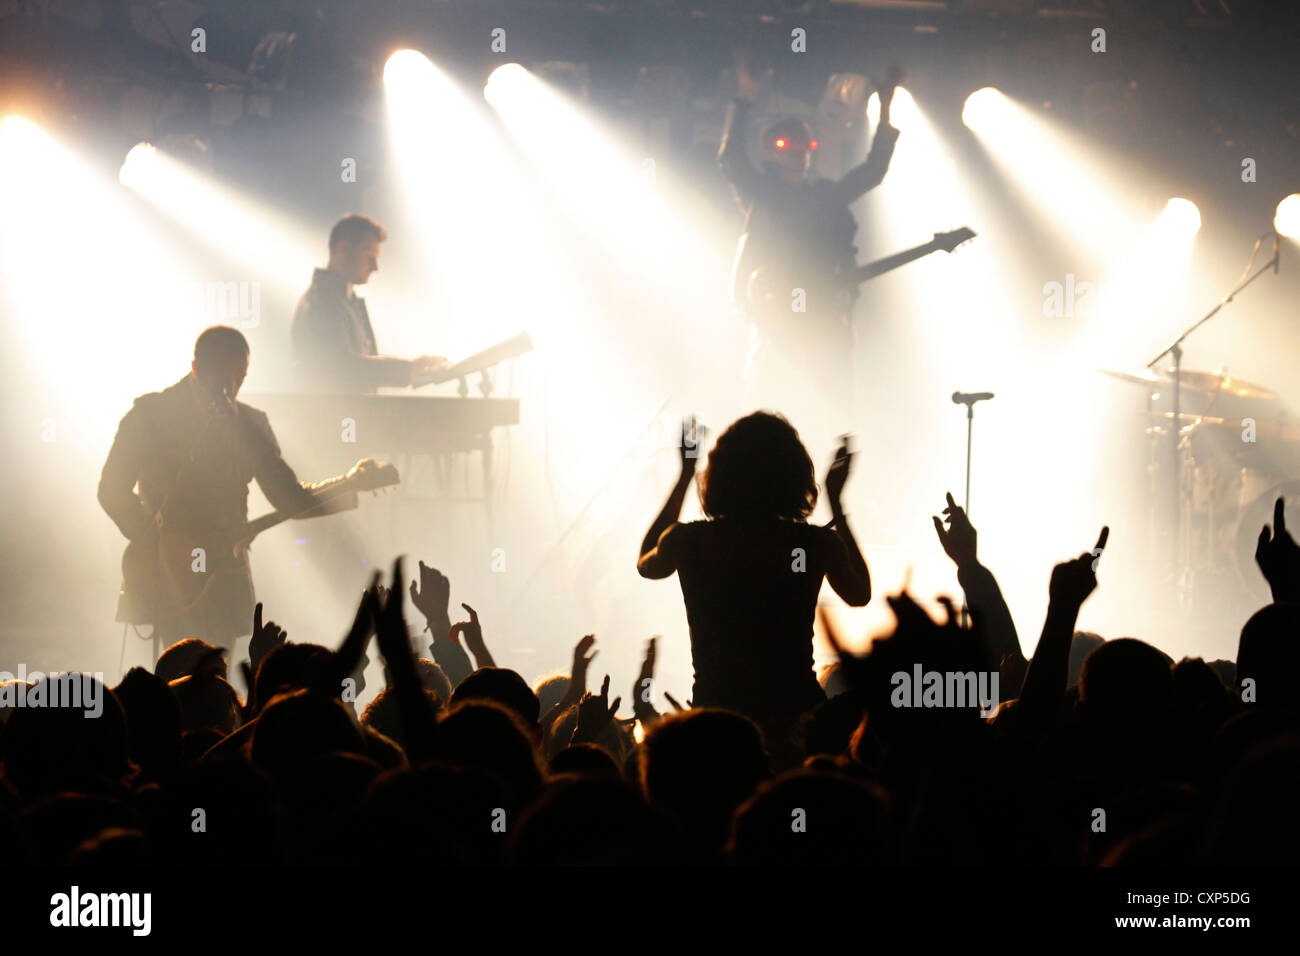 Silhouetté spectateurs / foule et l'ambiance de concert de rock avec des rockers sur scène éclairée par des spots Banque D'Images